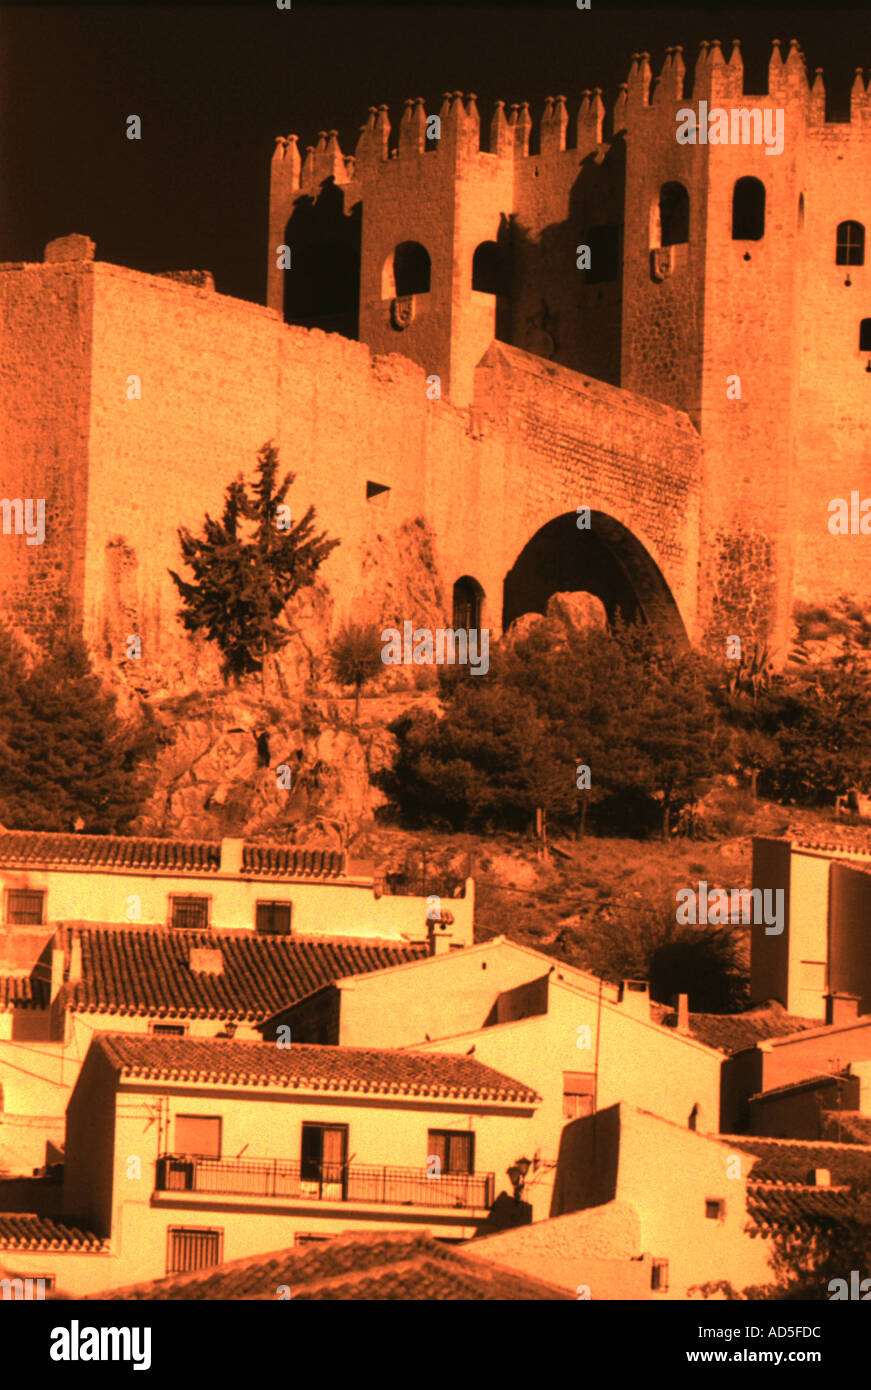 Paisaje de un pueblo español y el castillo, rodado en infrarrojo al mediodía. Foto de stock